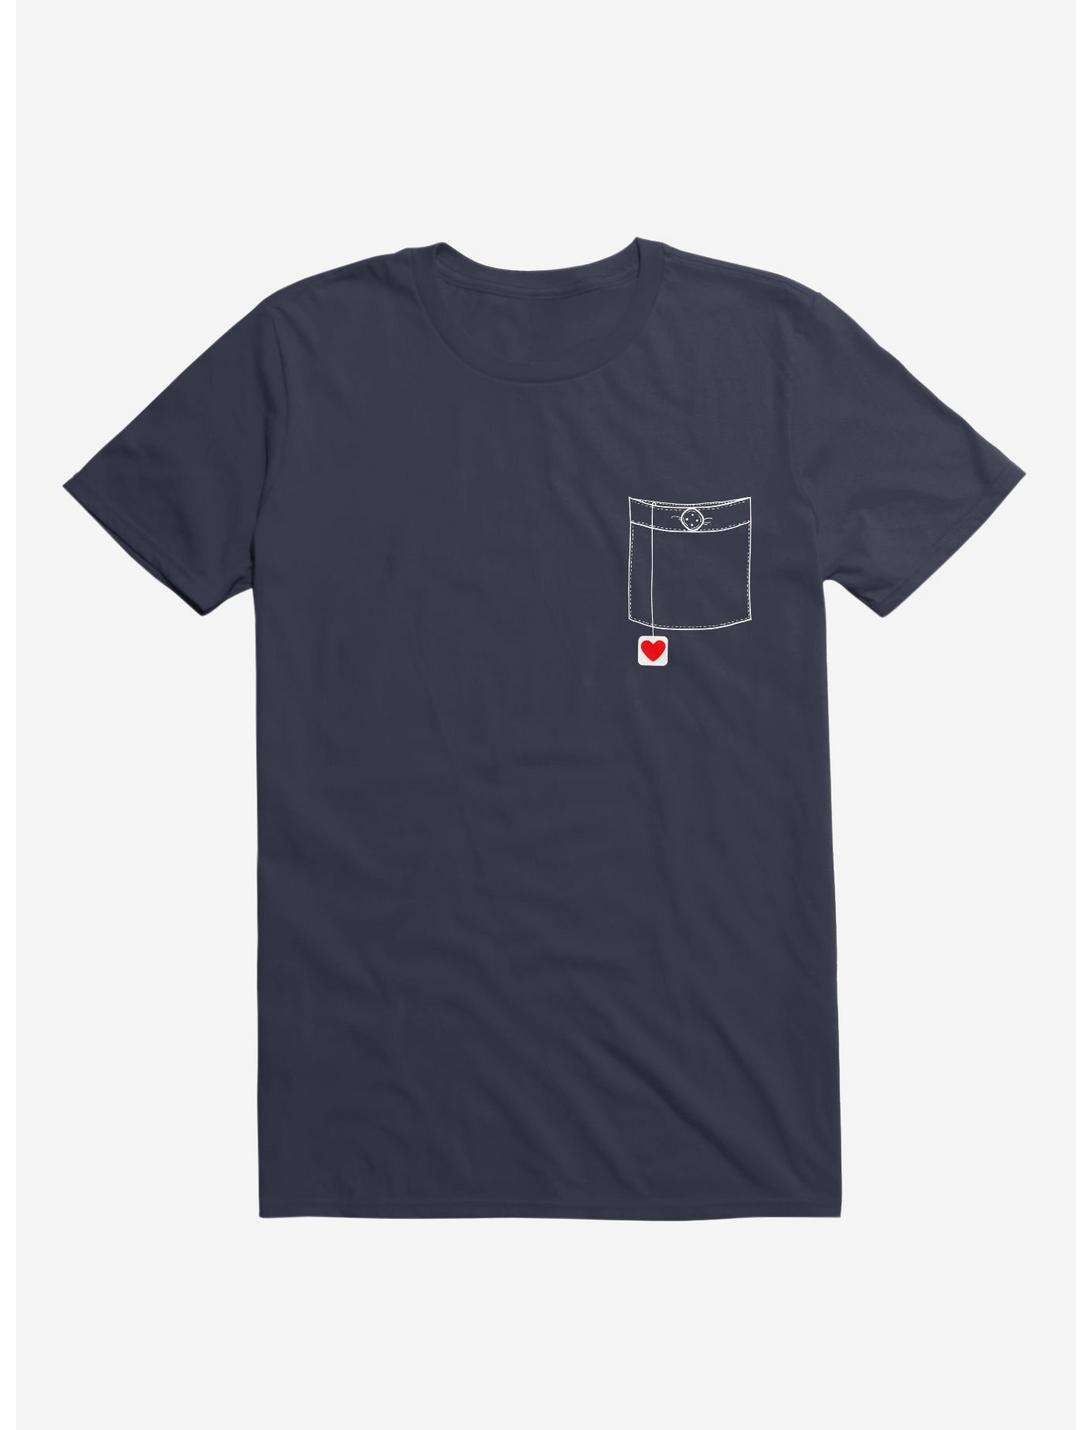 Pocket Full Of Love T-Shirt, NAVY, hi-res